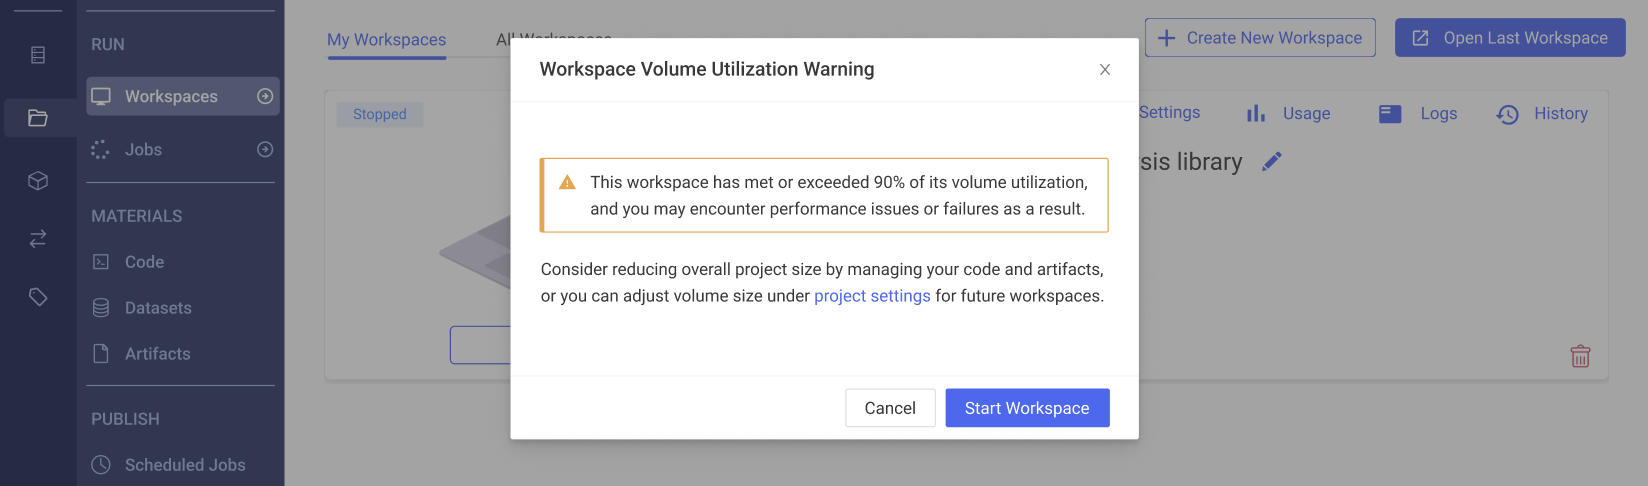 Workspace volume utilization warning